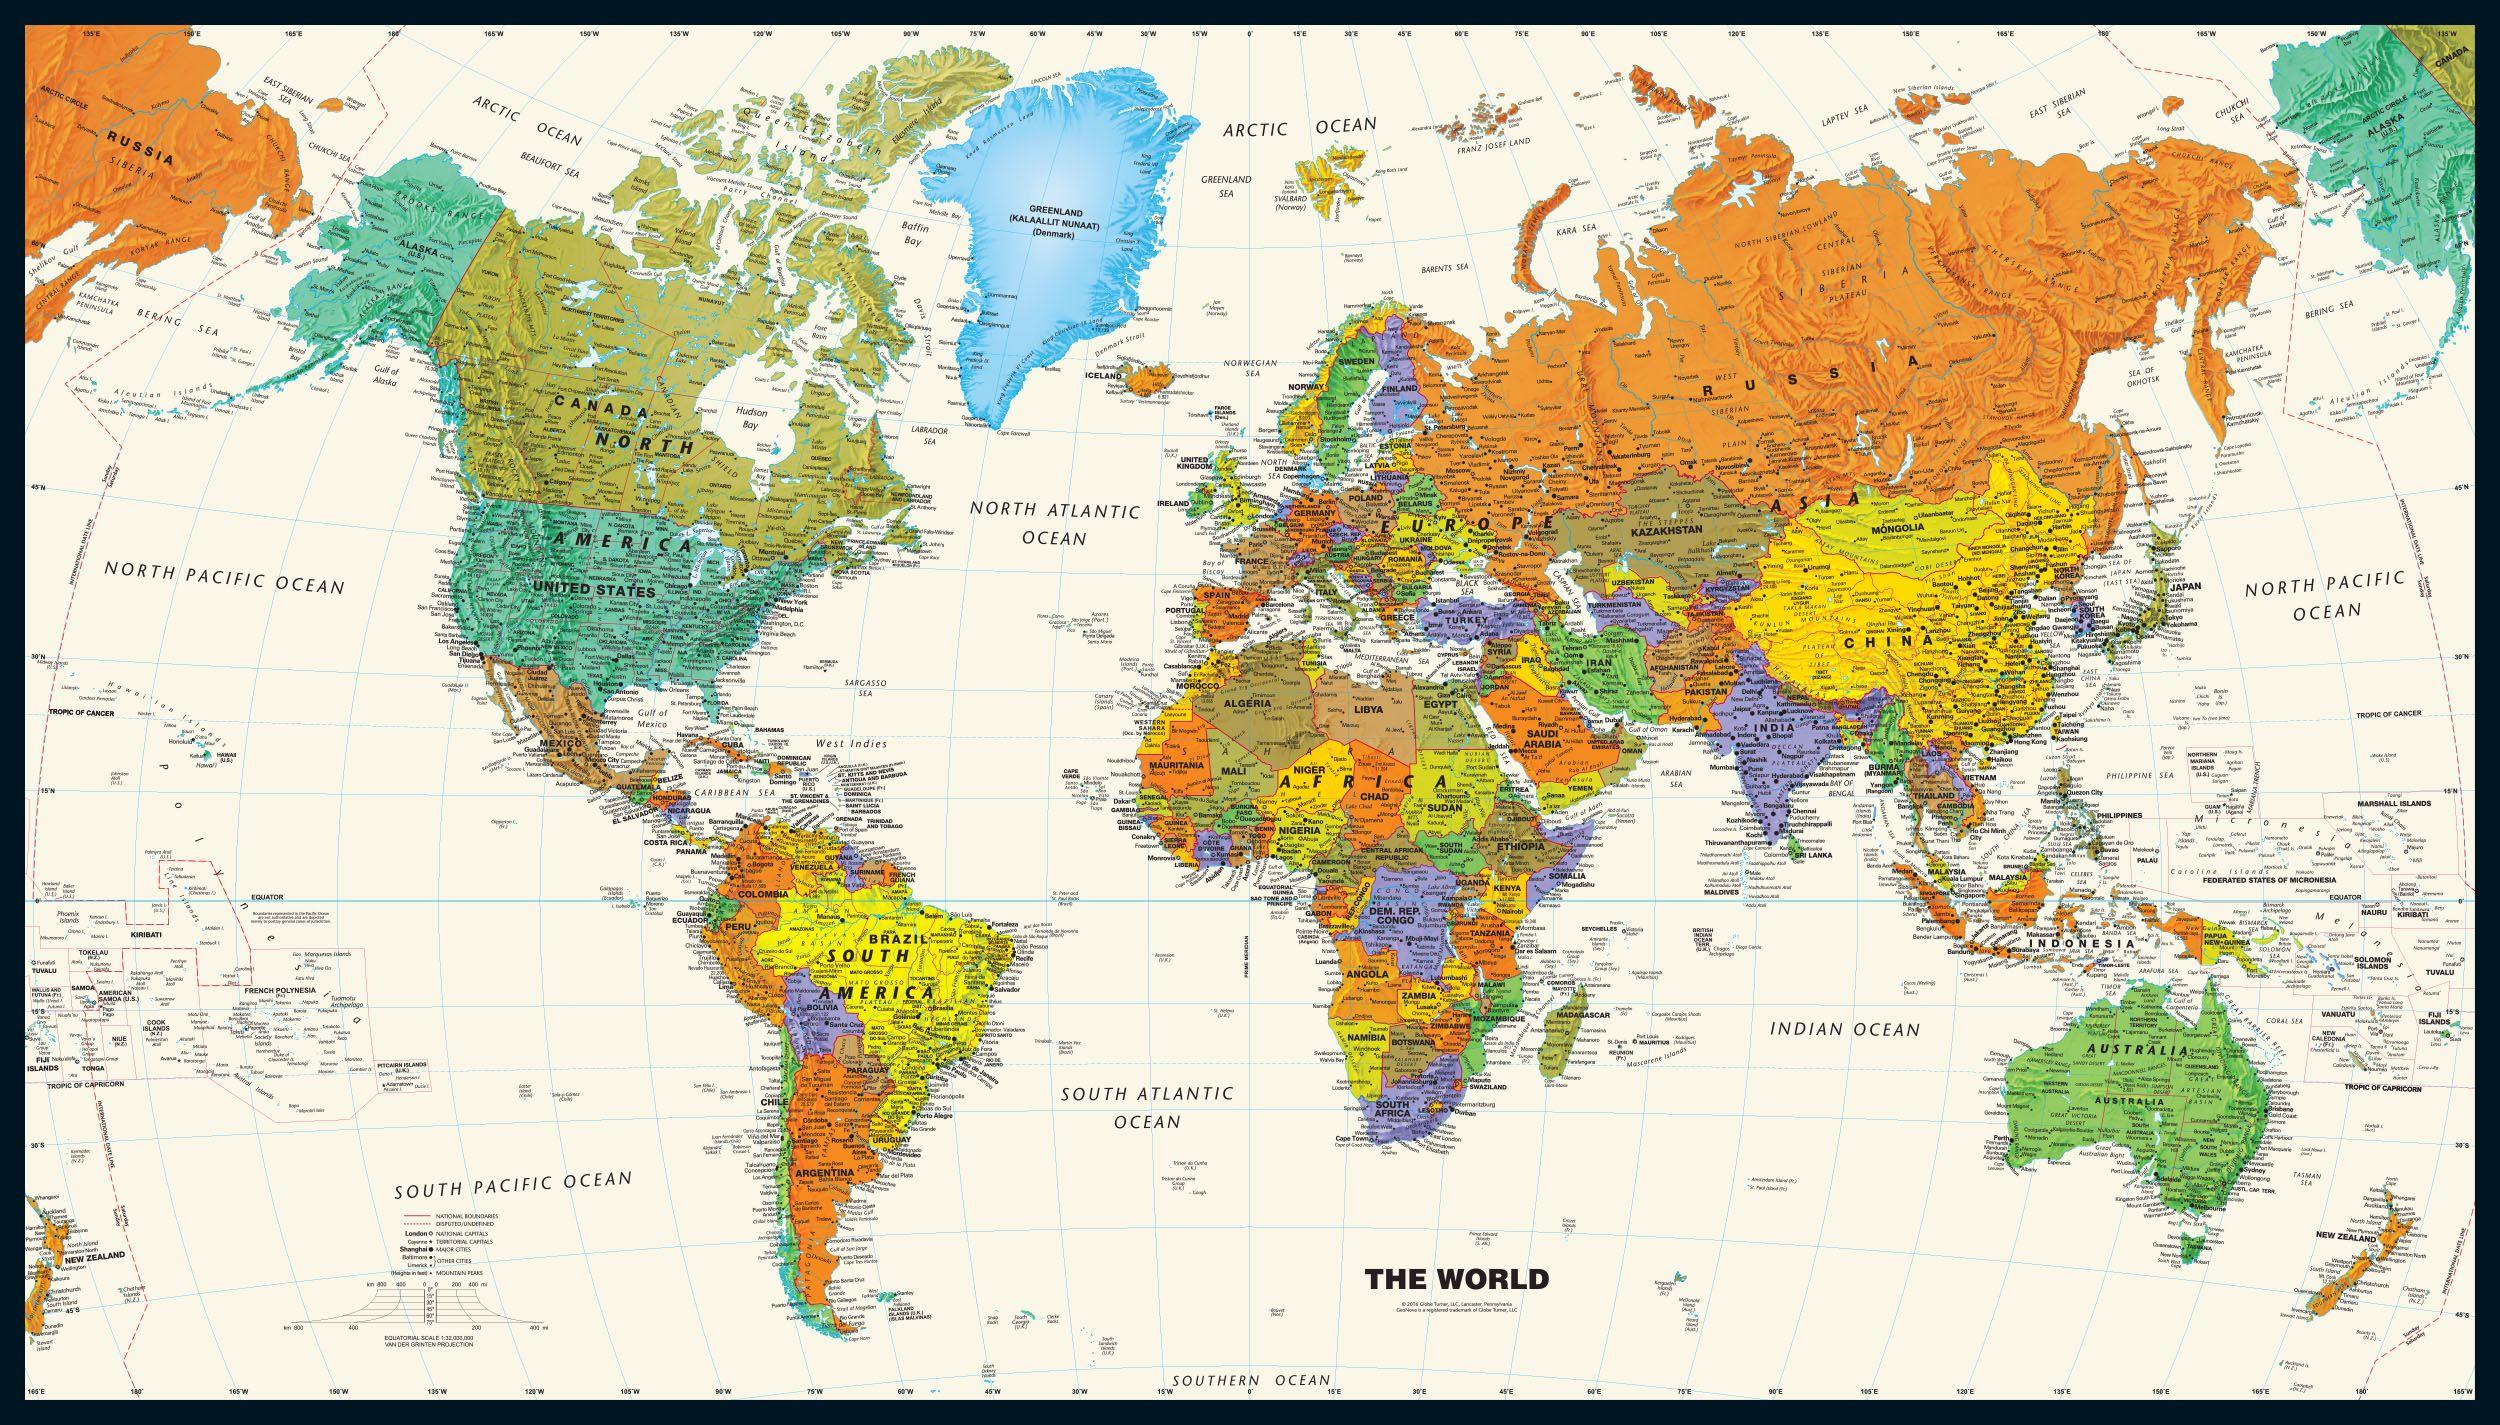 نقشه دنیا با کیفیت بالا